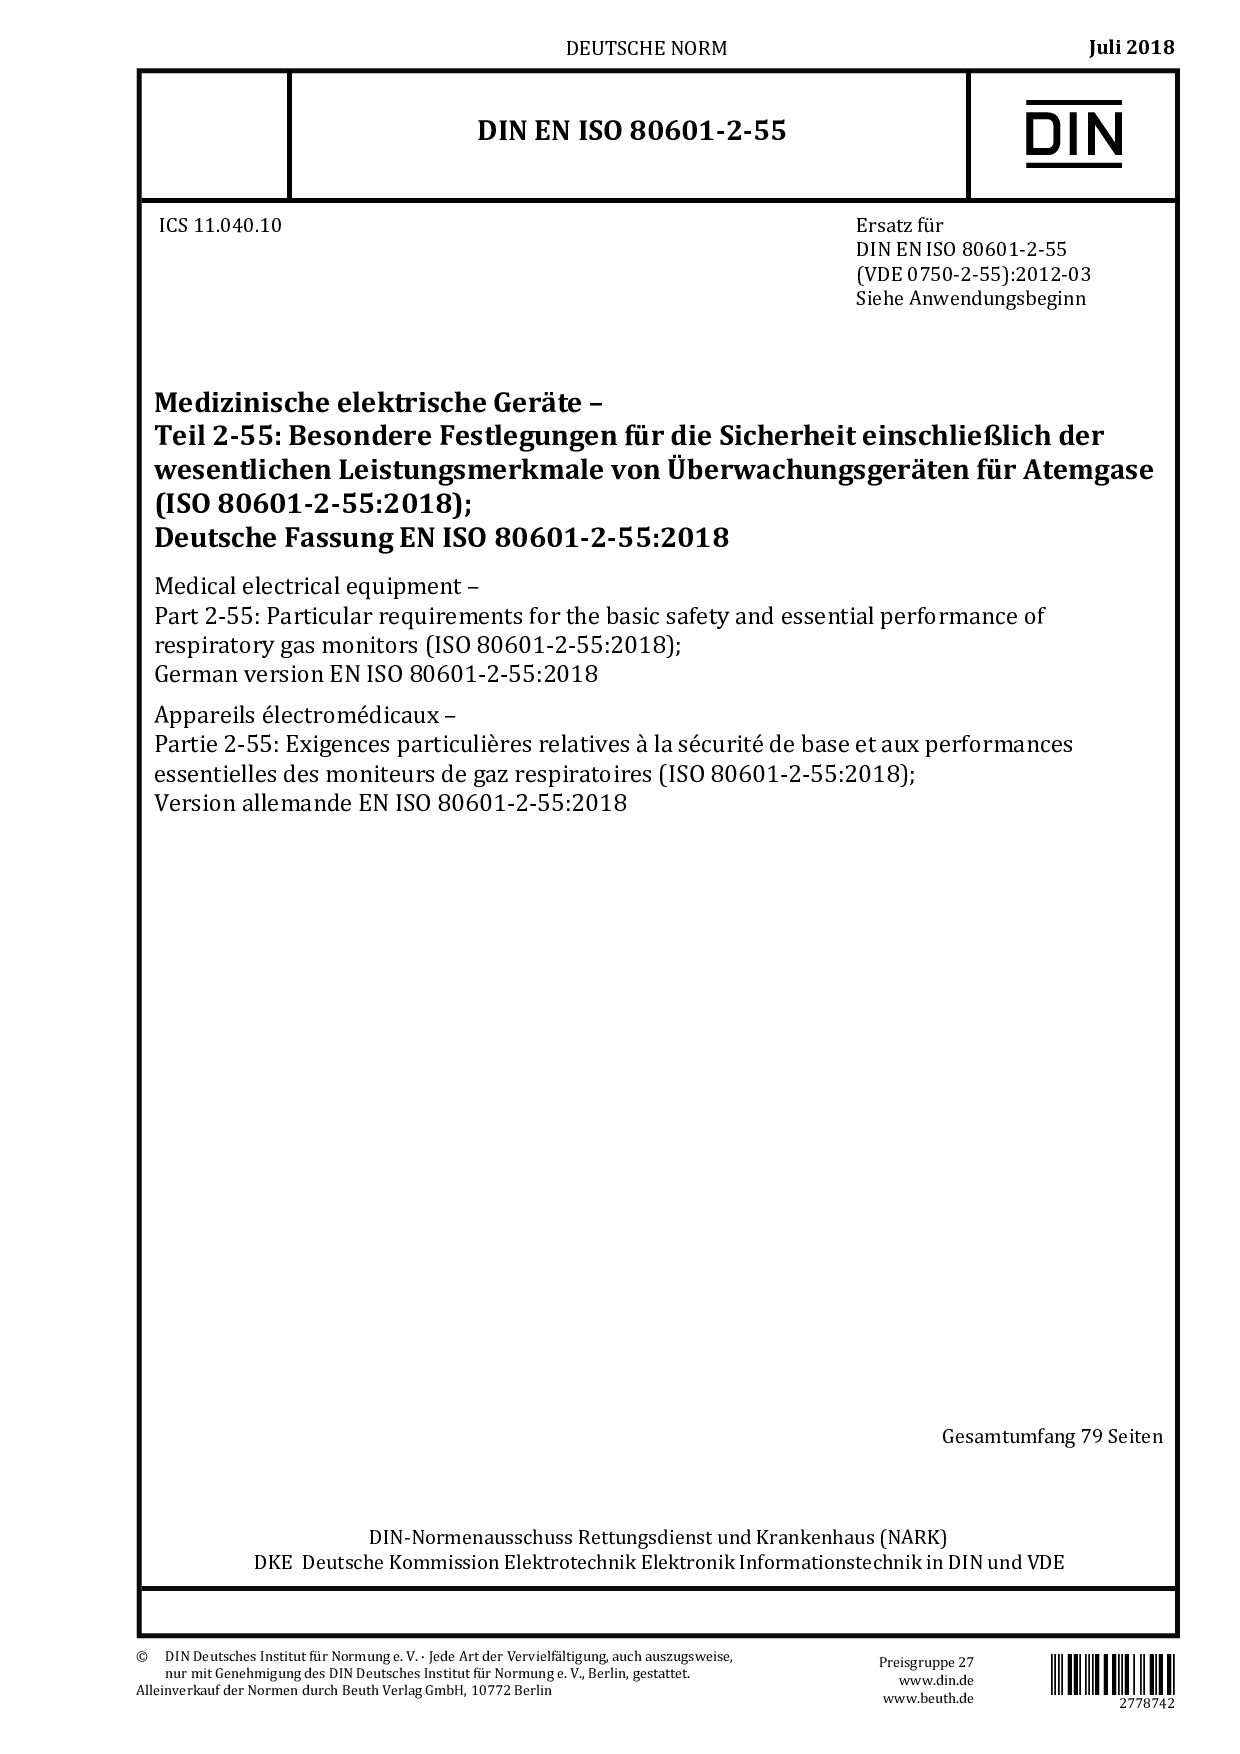 DIN EN ISO 80601-2-55:2018封面图